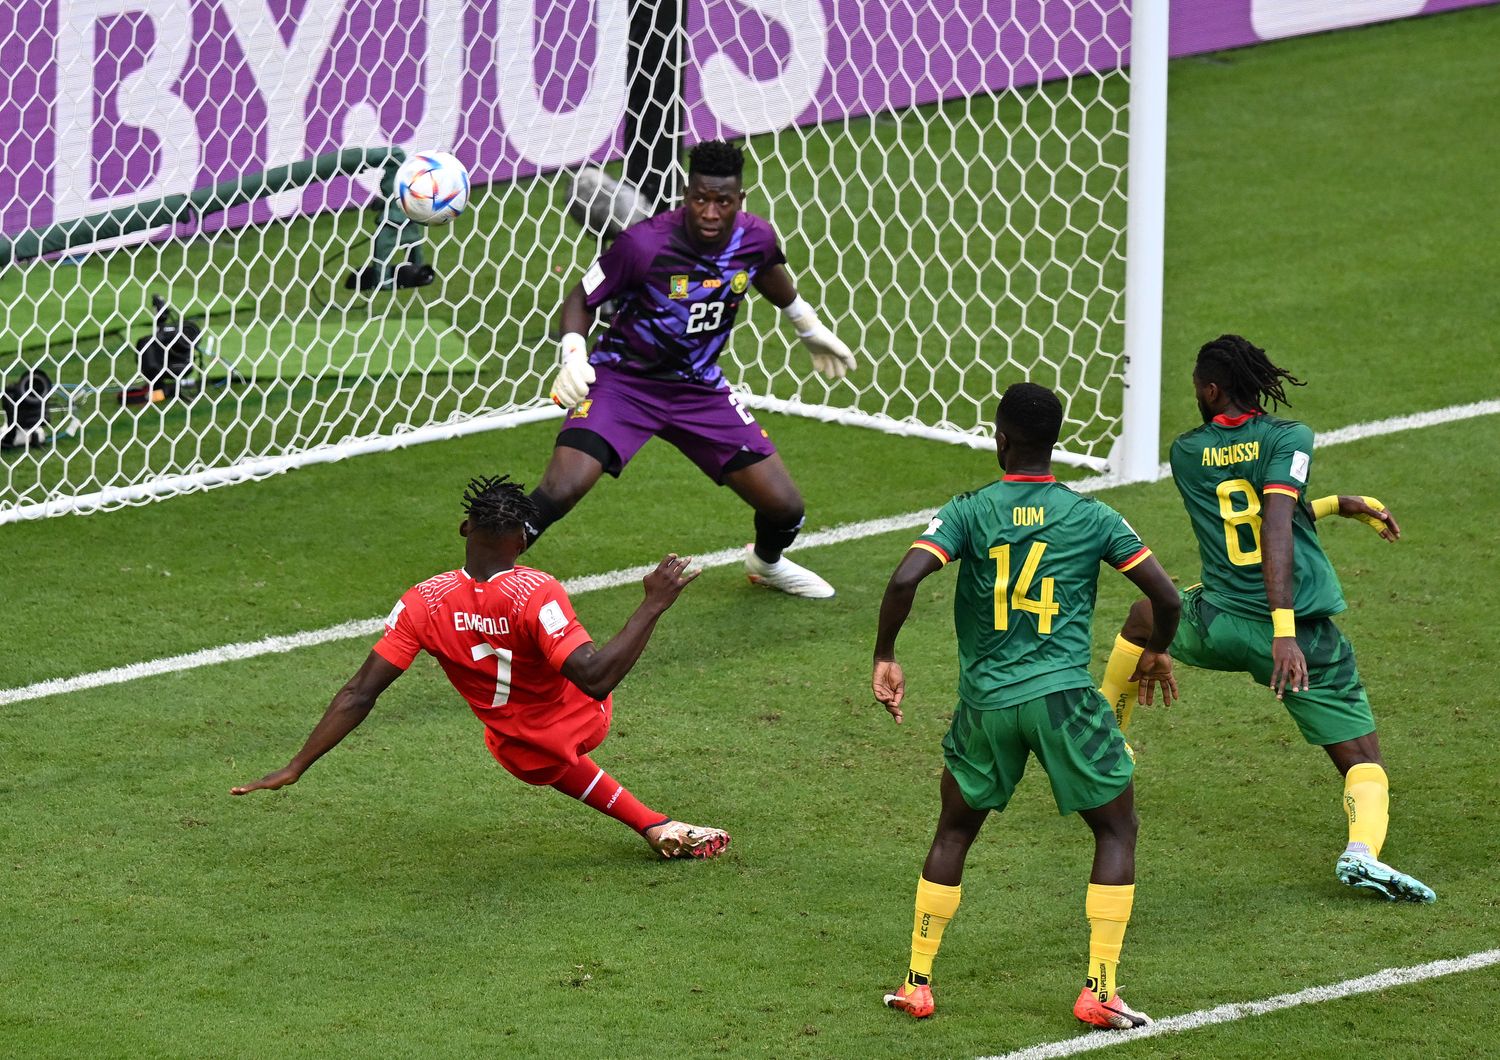 Embolo segna il gol della Svizzera contro il Camerun ai mondiali in Qatar